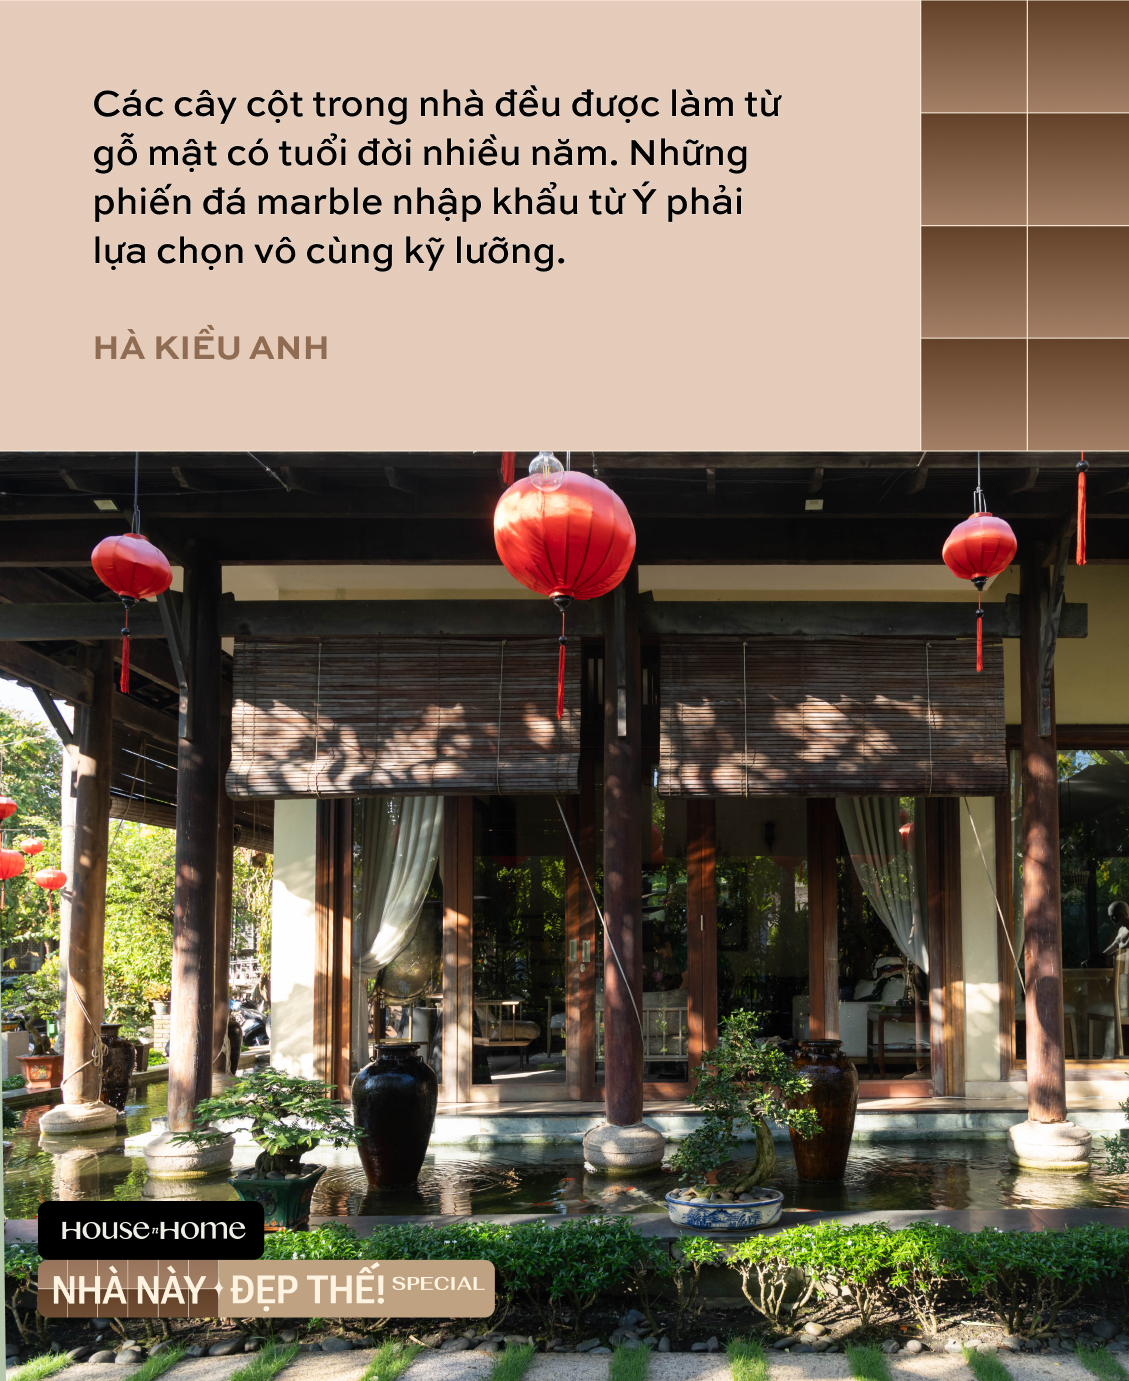 Biệt thự nhà vườn gần 20 năm tuổi của HH Hà Kiều Anh: Phong vị Á Đông cổ kính, khẳng định không bao giờ bán- Ảnh 10.